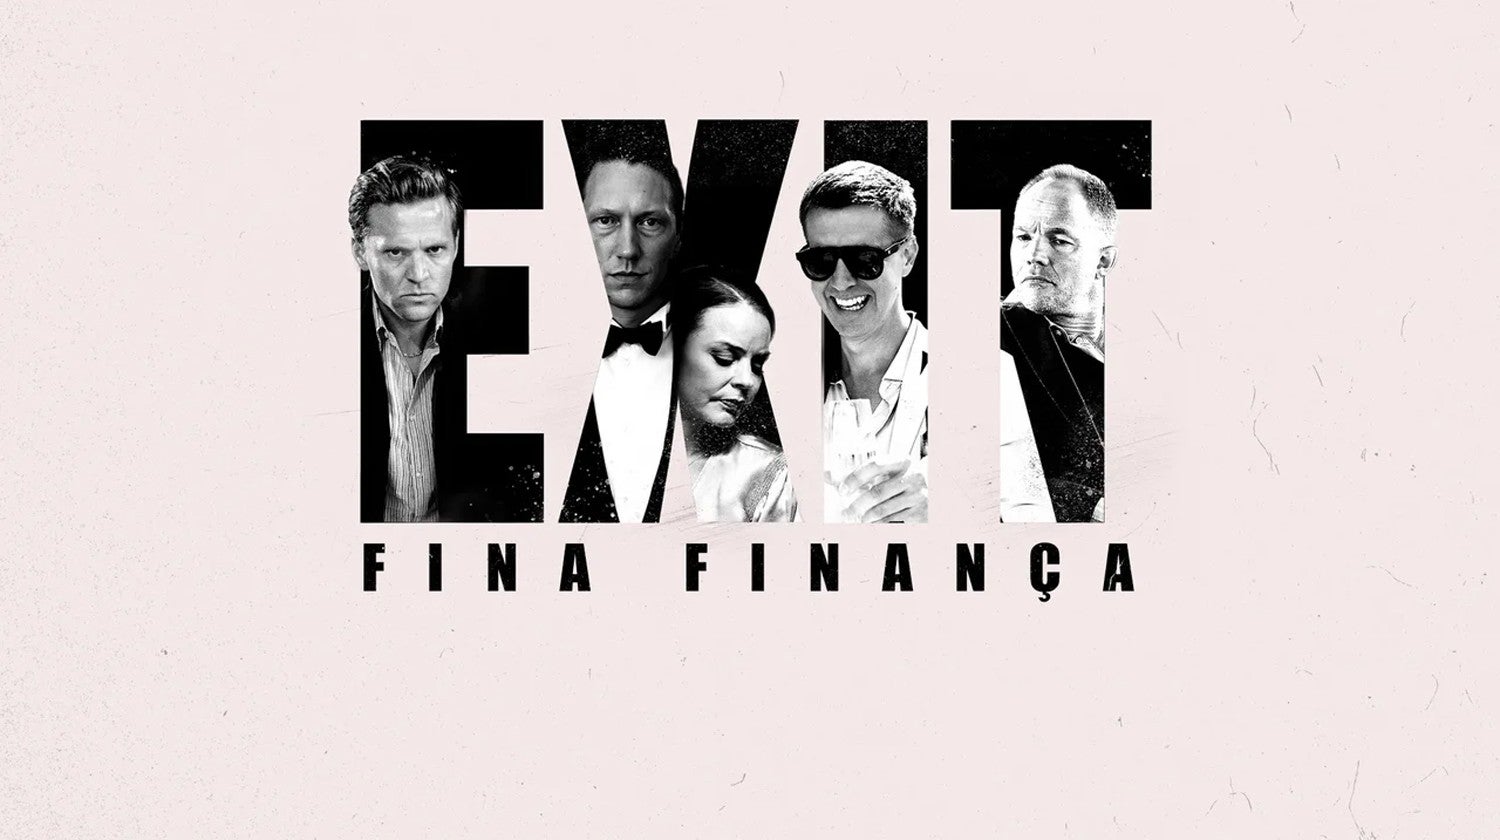 Exit - Fina Finana